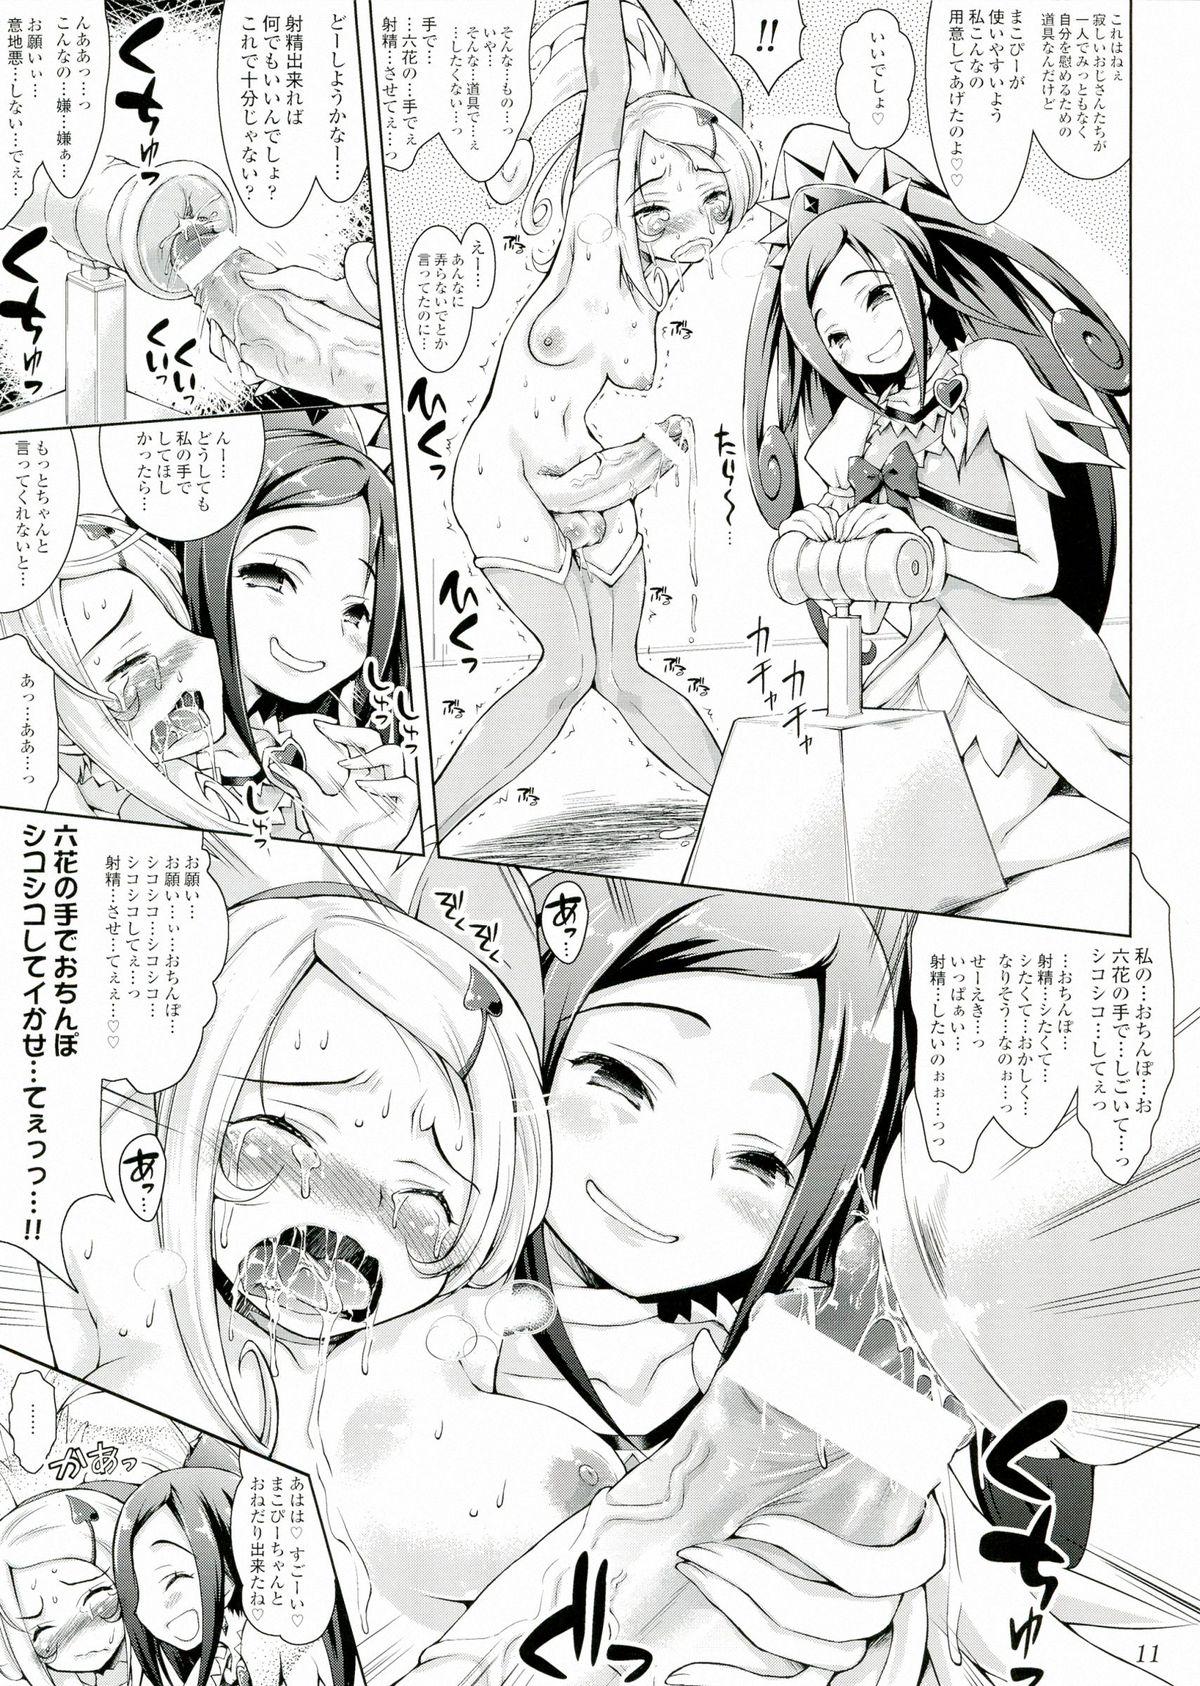 Erotica Makopi- ni Haeteta Chinpo wa Rikka ni Ijime rareru to Nando demo Shasei shichau no - Dokidoki precure Teenage Porn - Page 11